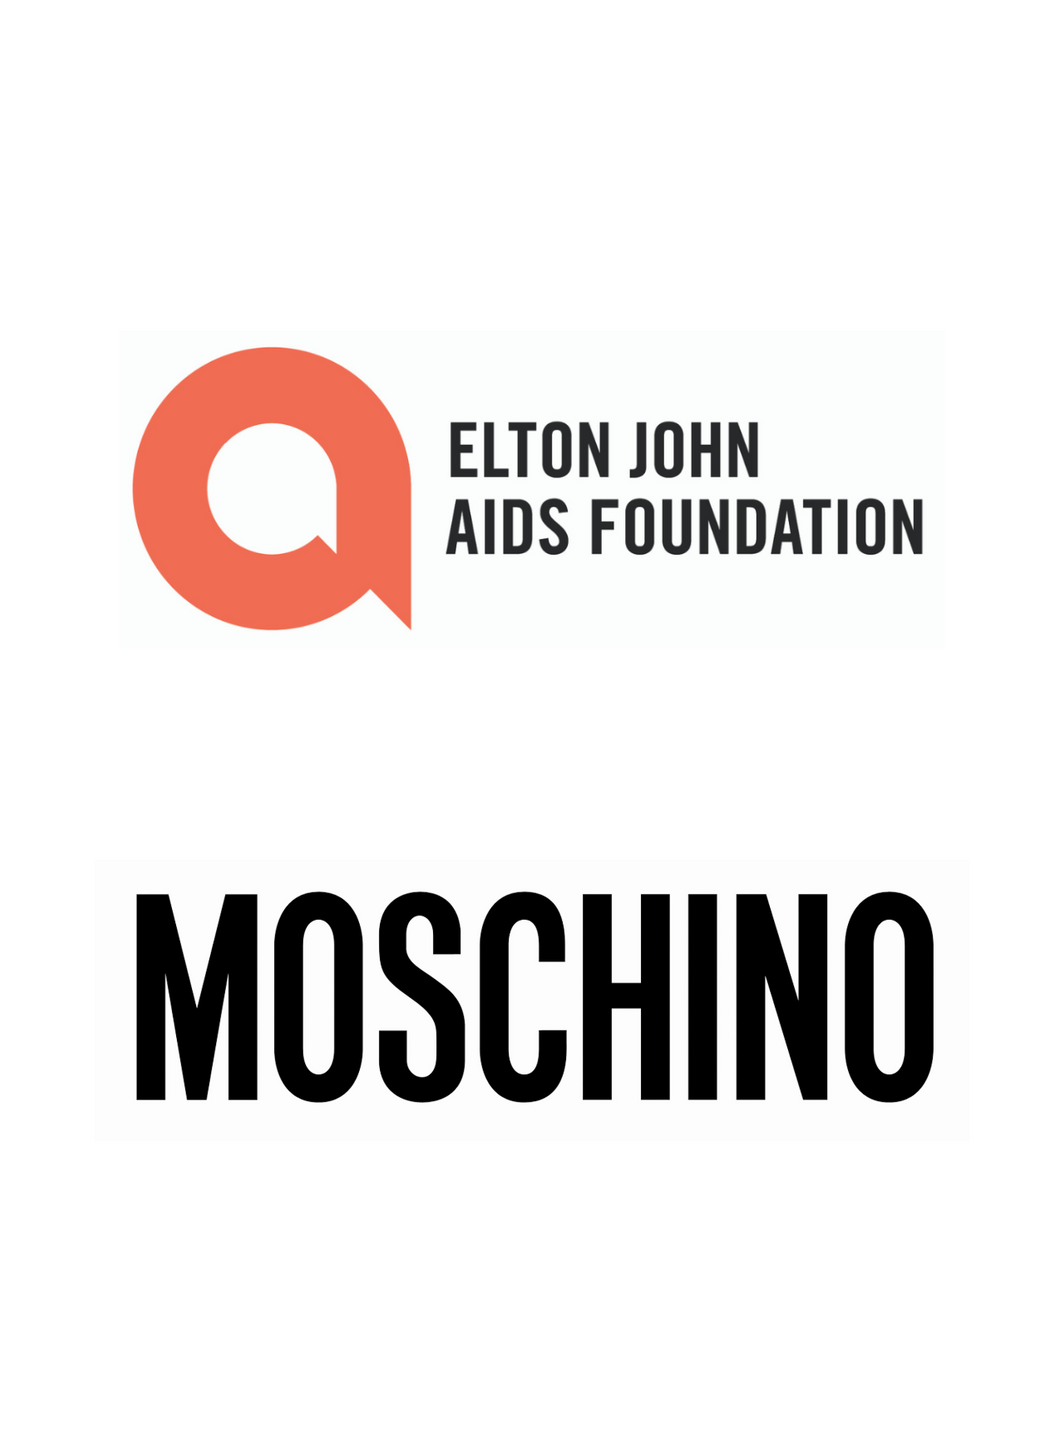 Un t-shirt Moschino pour soutenir la Fondation Elton John Aids.